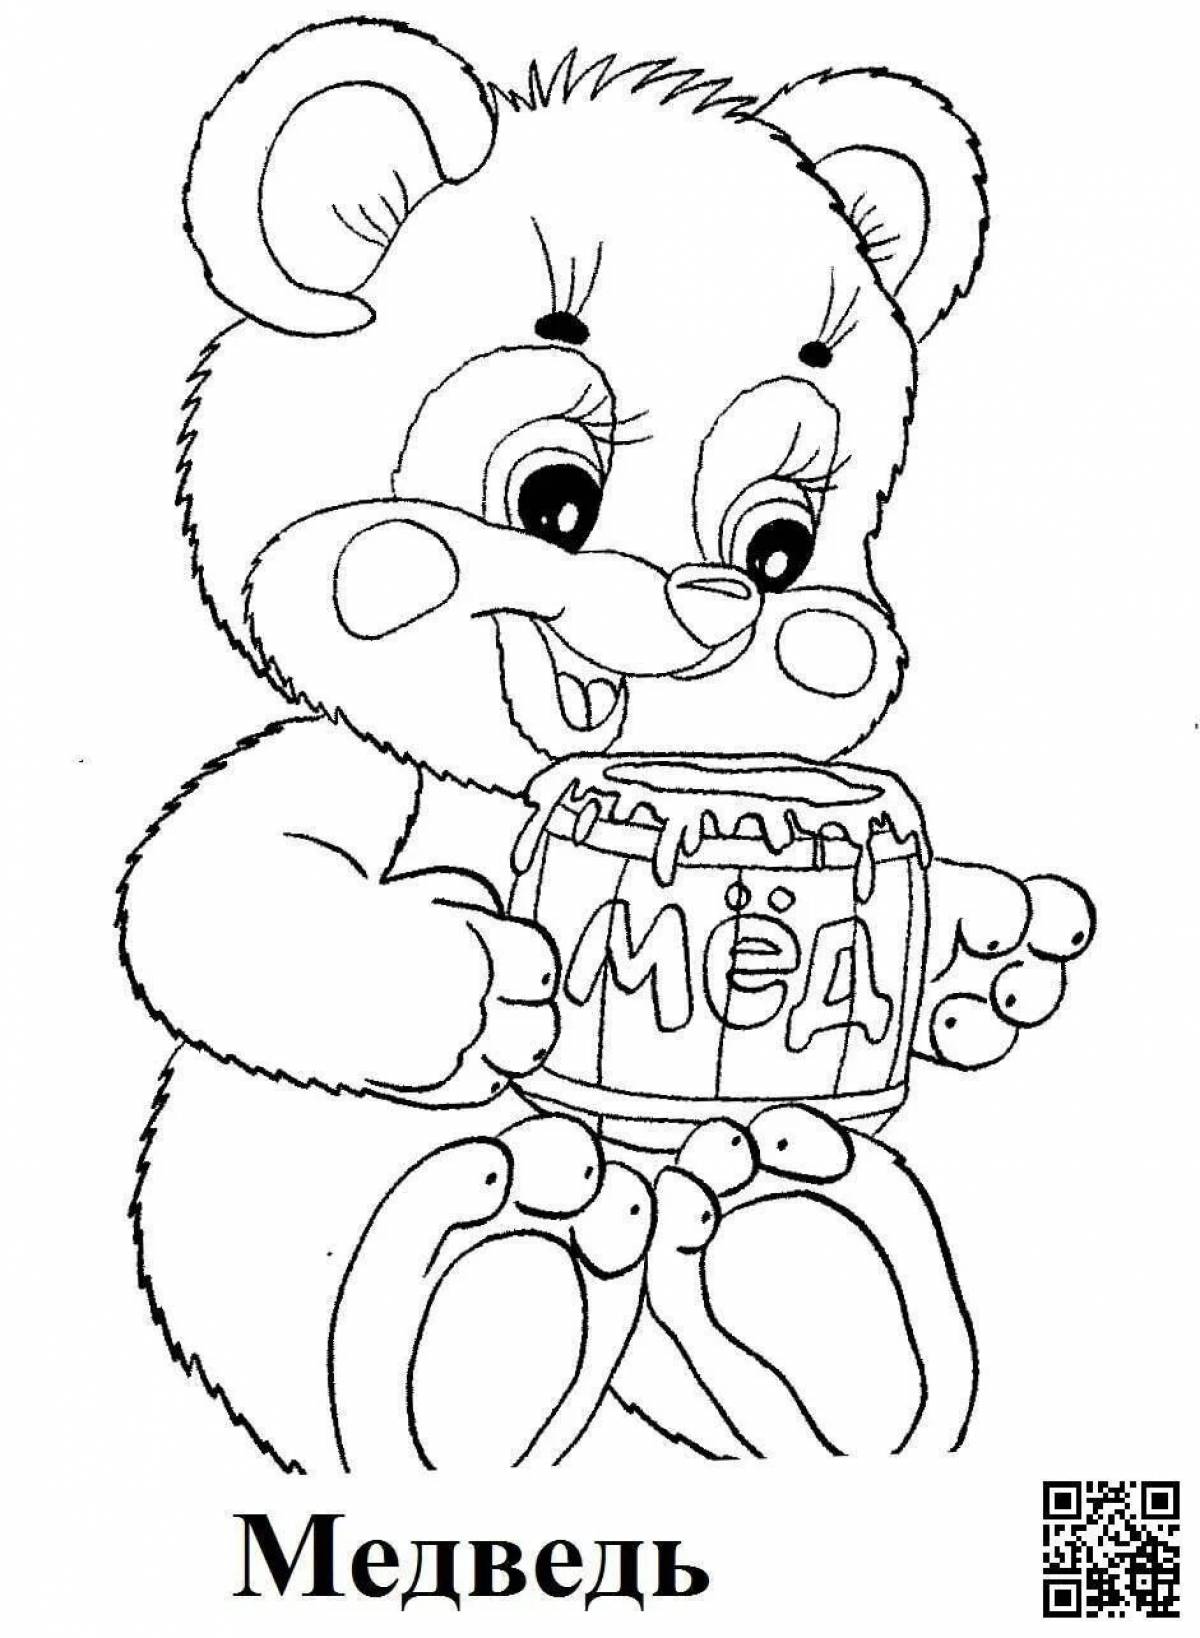 Incredible honey bear coloring book